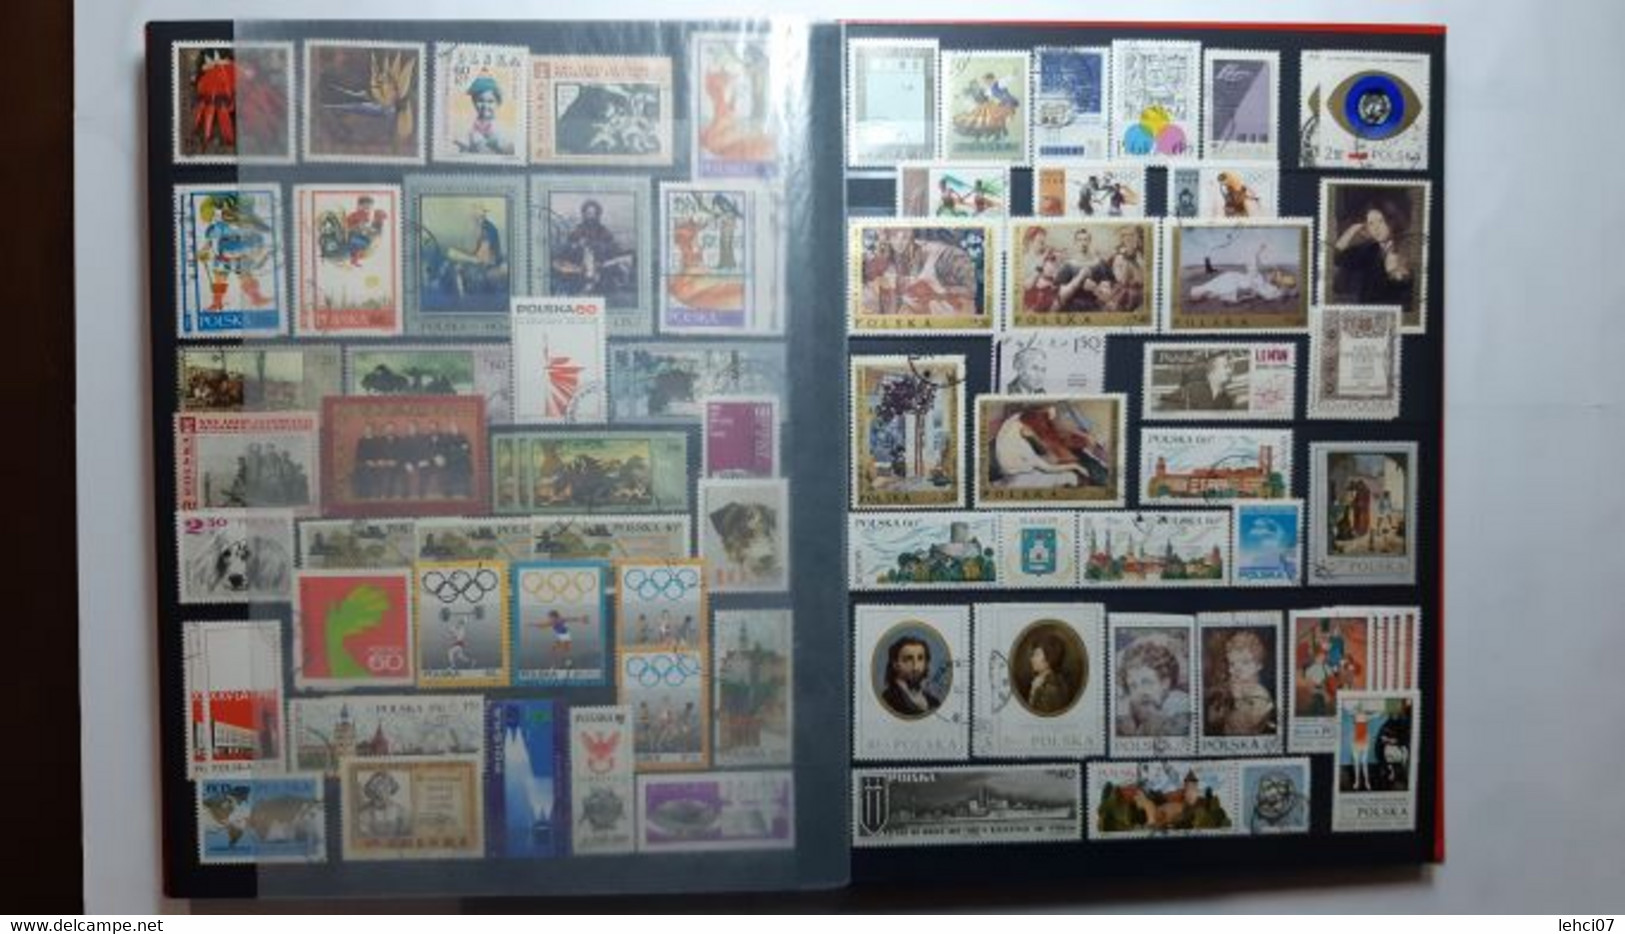 POLOGNE Bel ensemble, collection d’environ 1 380 timbres